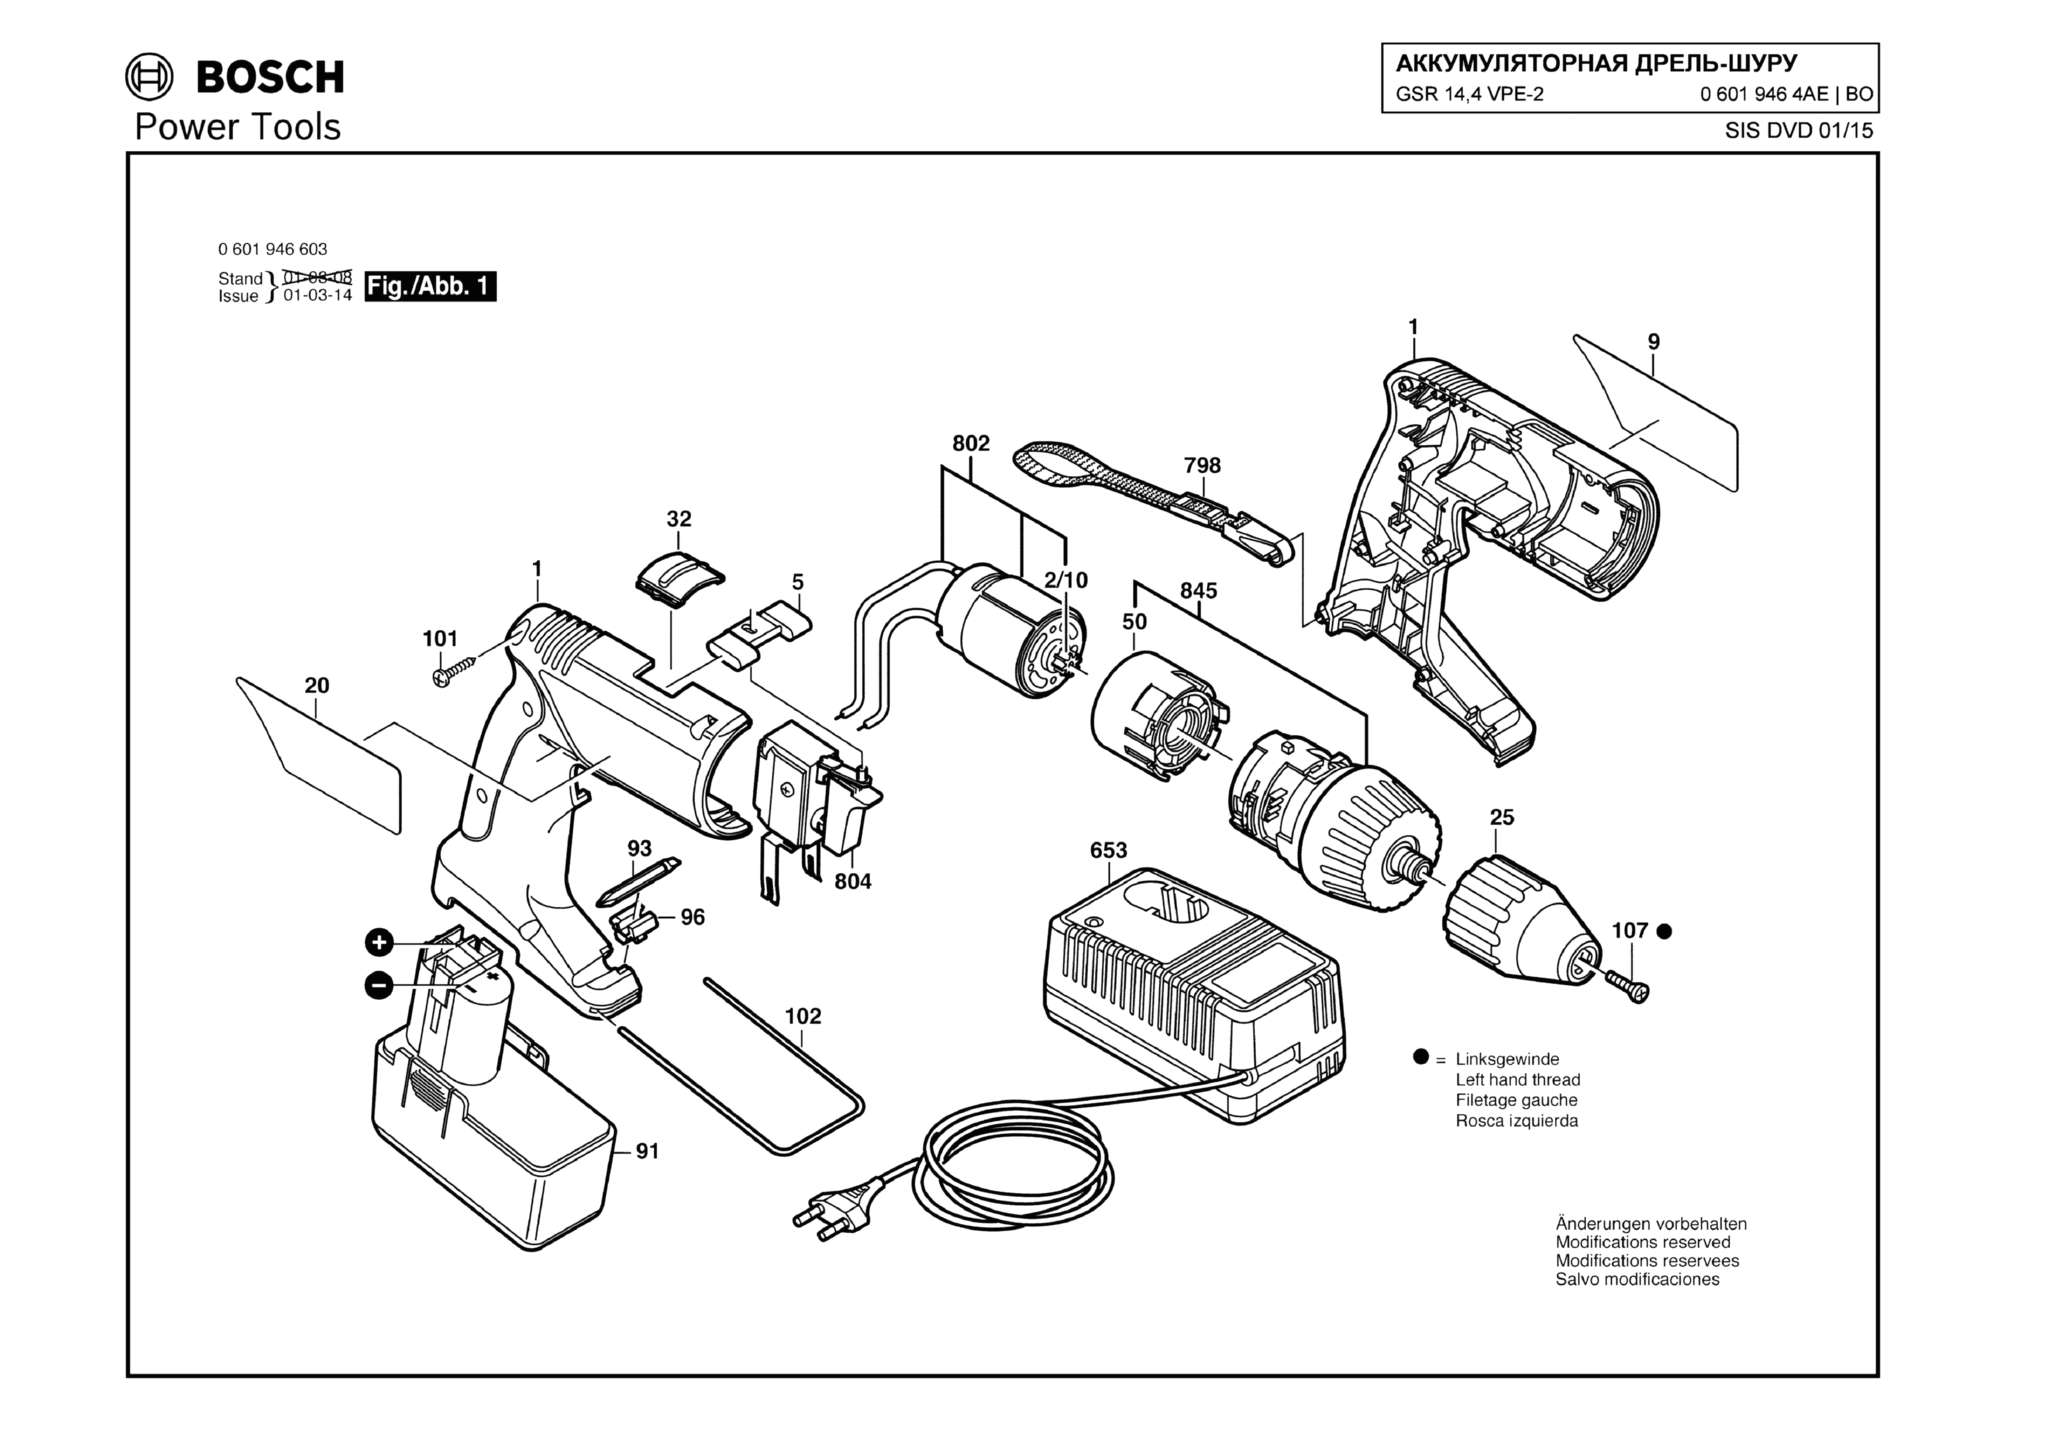 Запчасти, схема и деталировка Bosch GSR 14,4 VPE-2 (ТИП 06019464AE)